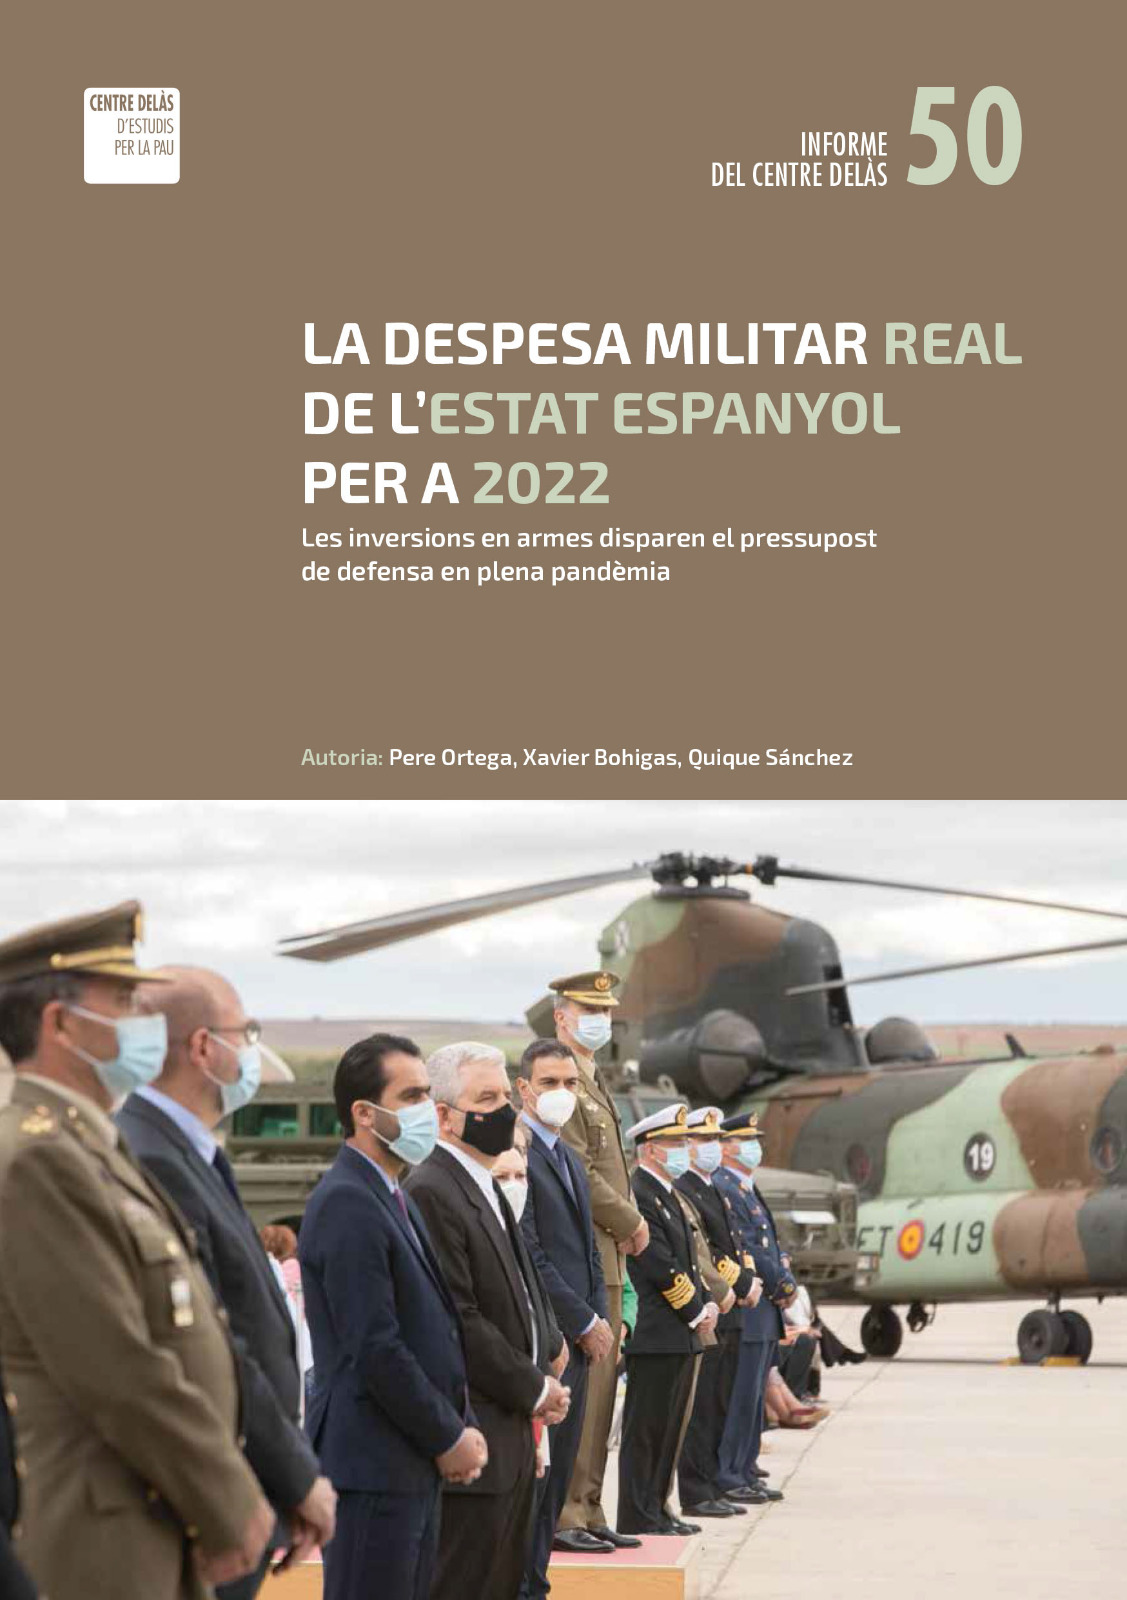 Informe 50: “La despesa militar real de l’Estat espanyol per a 2022. Les inversions en armes disparen el pressupost en defensa en plena pandèmia”